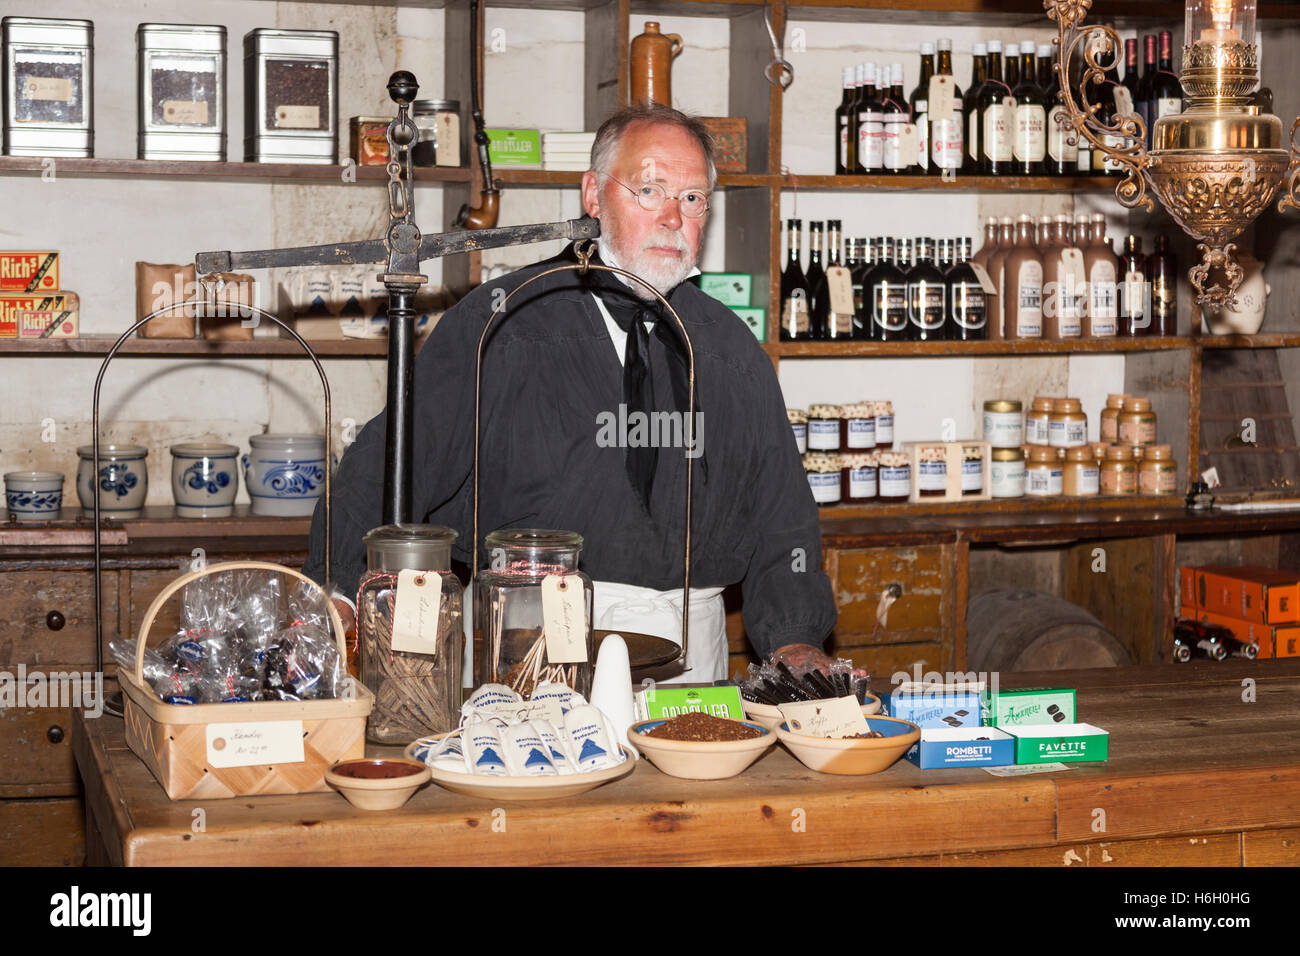 A shopkeeper in a shop, Den Gamle By, Aarhus, Denmark Stock Photo